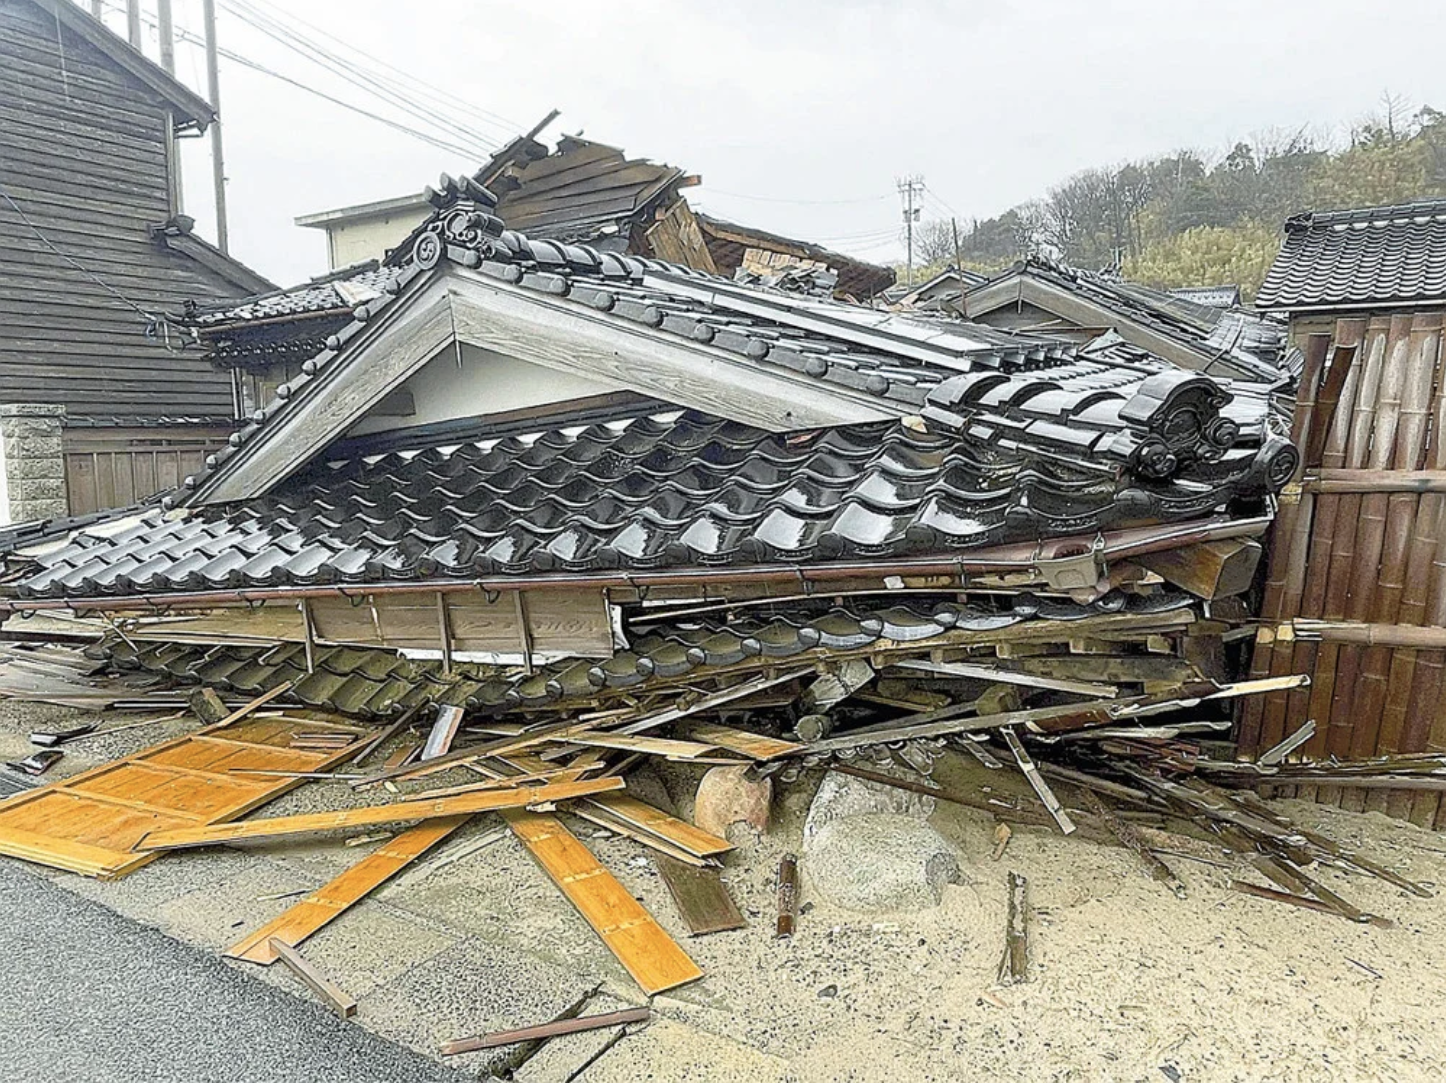 石川能登地震、文科省の教えである「机の下に隠れる」では助からない事が判明したのでは？戸建住宅の場合は大地震では外に避難。